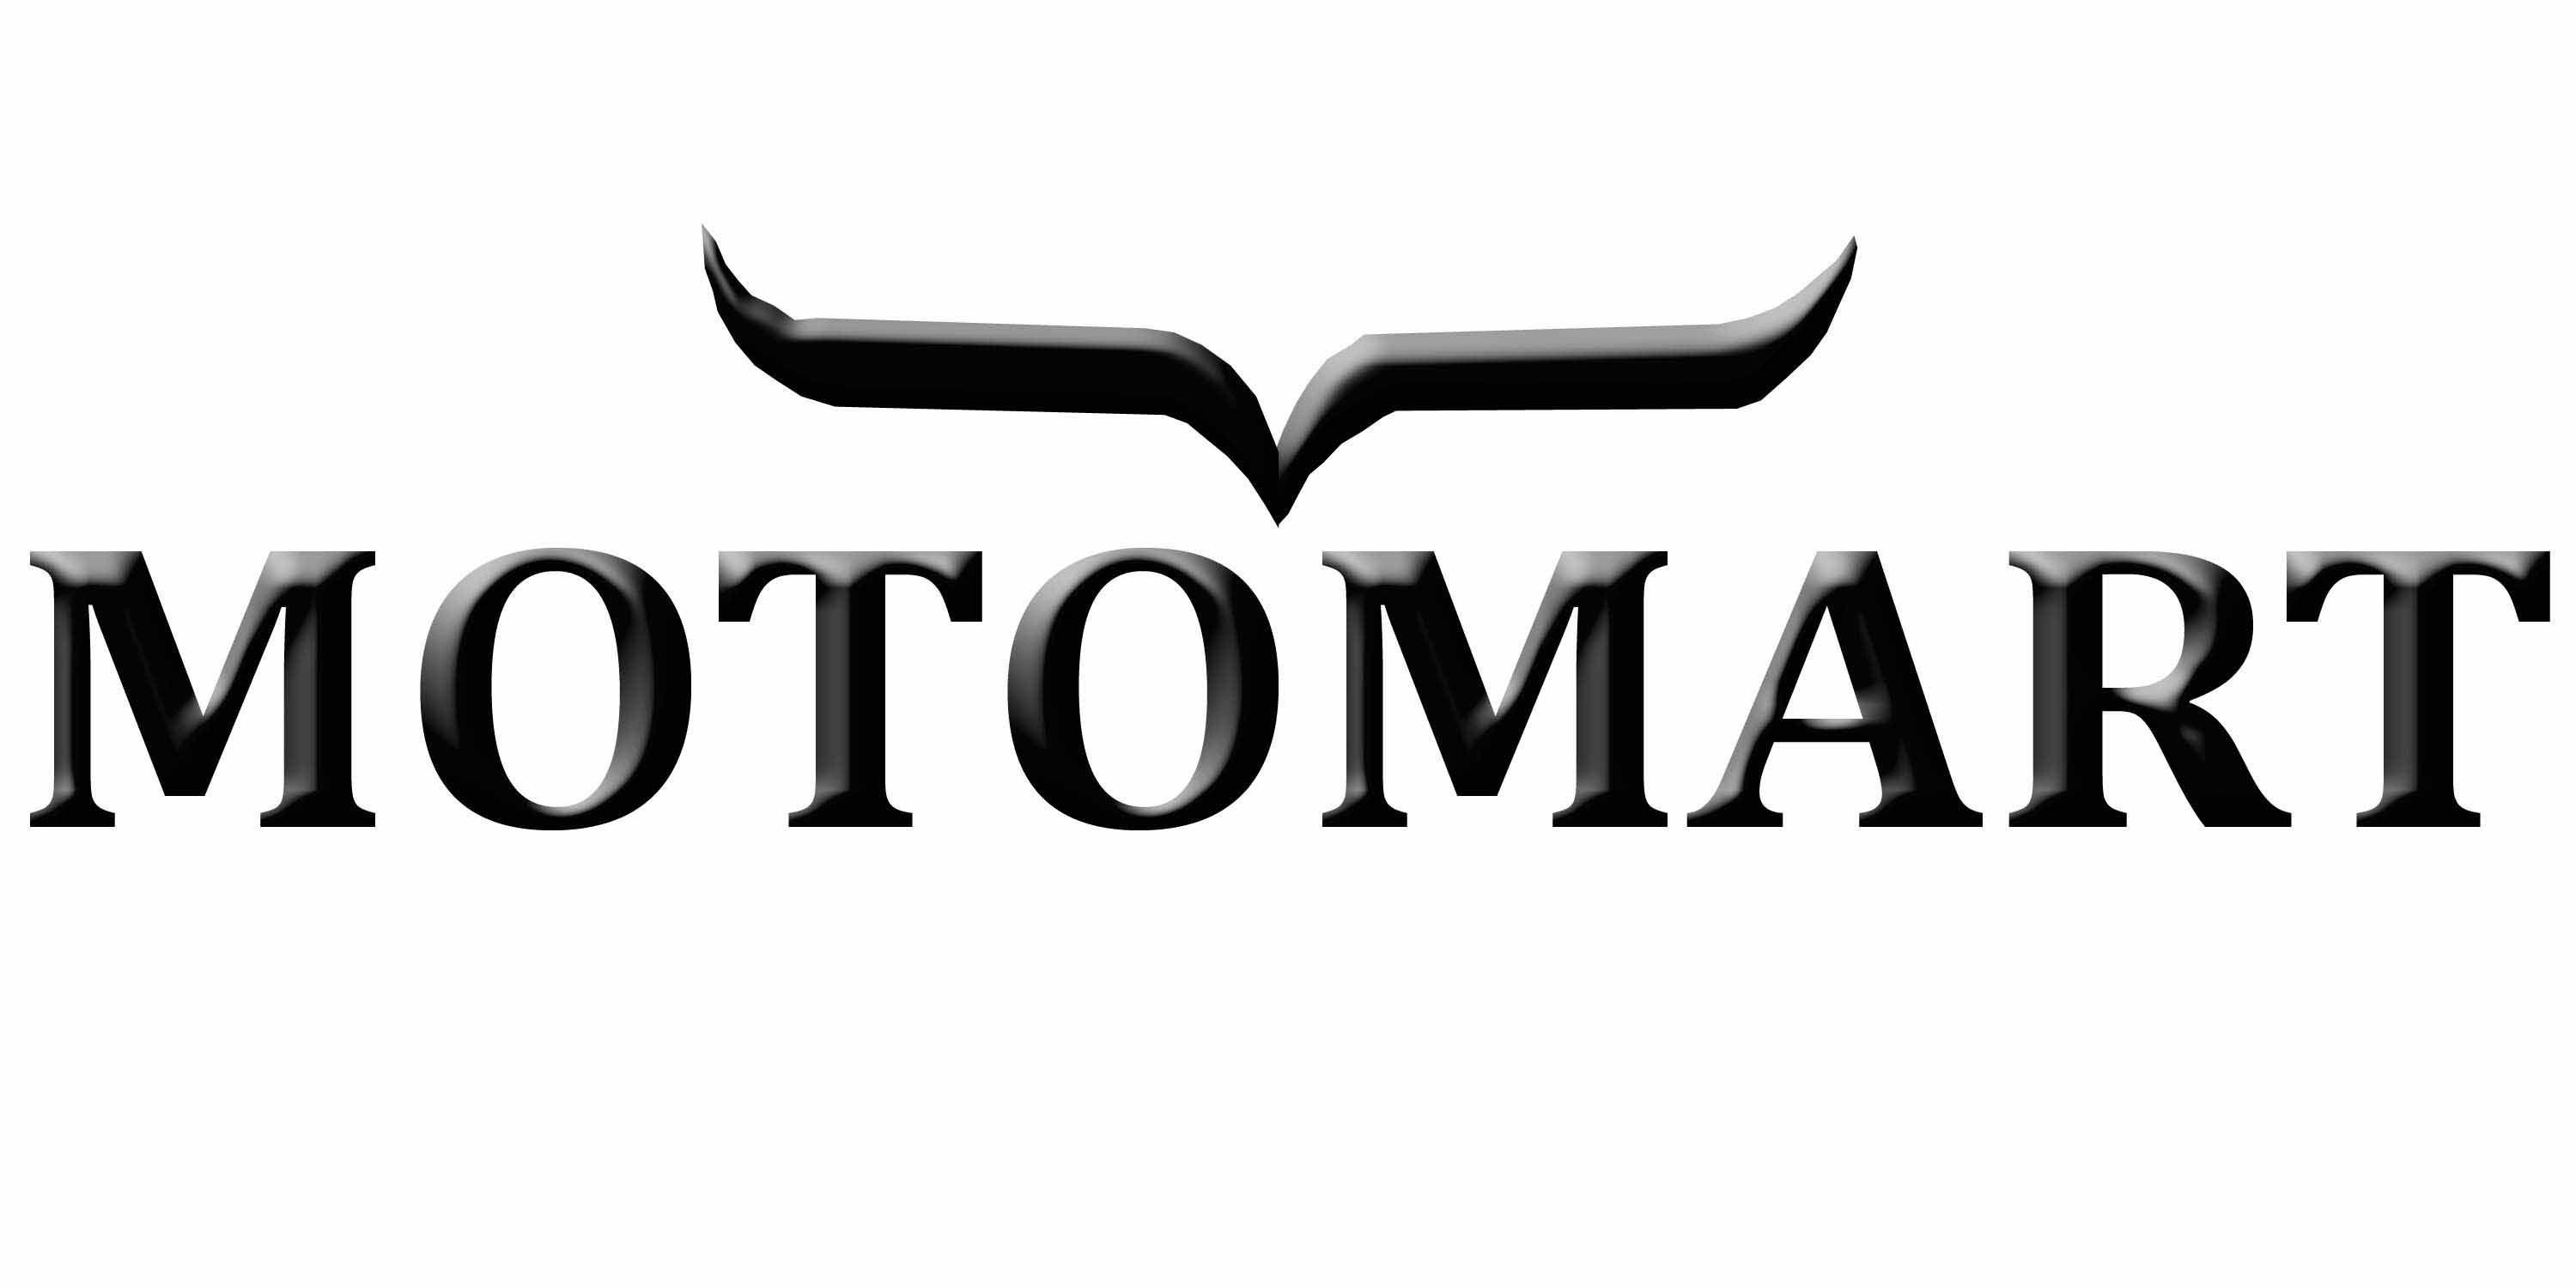 Motomart Logo - 4. Store